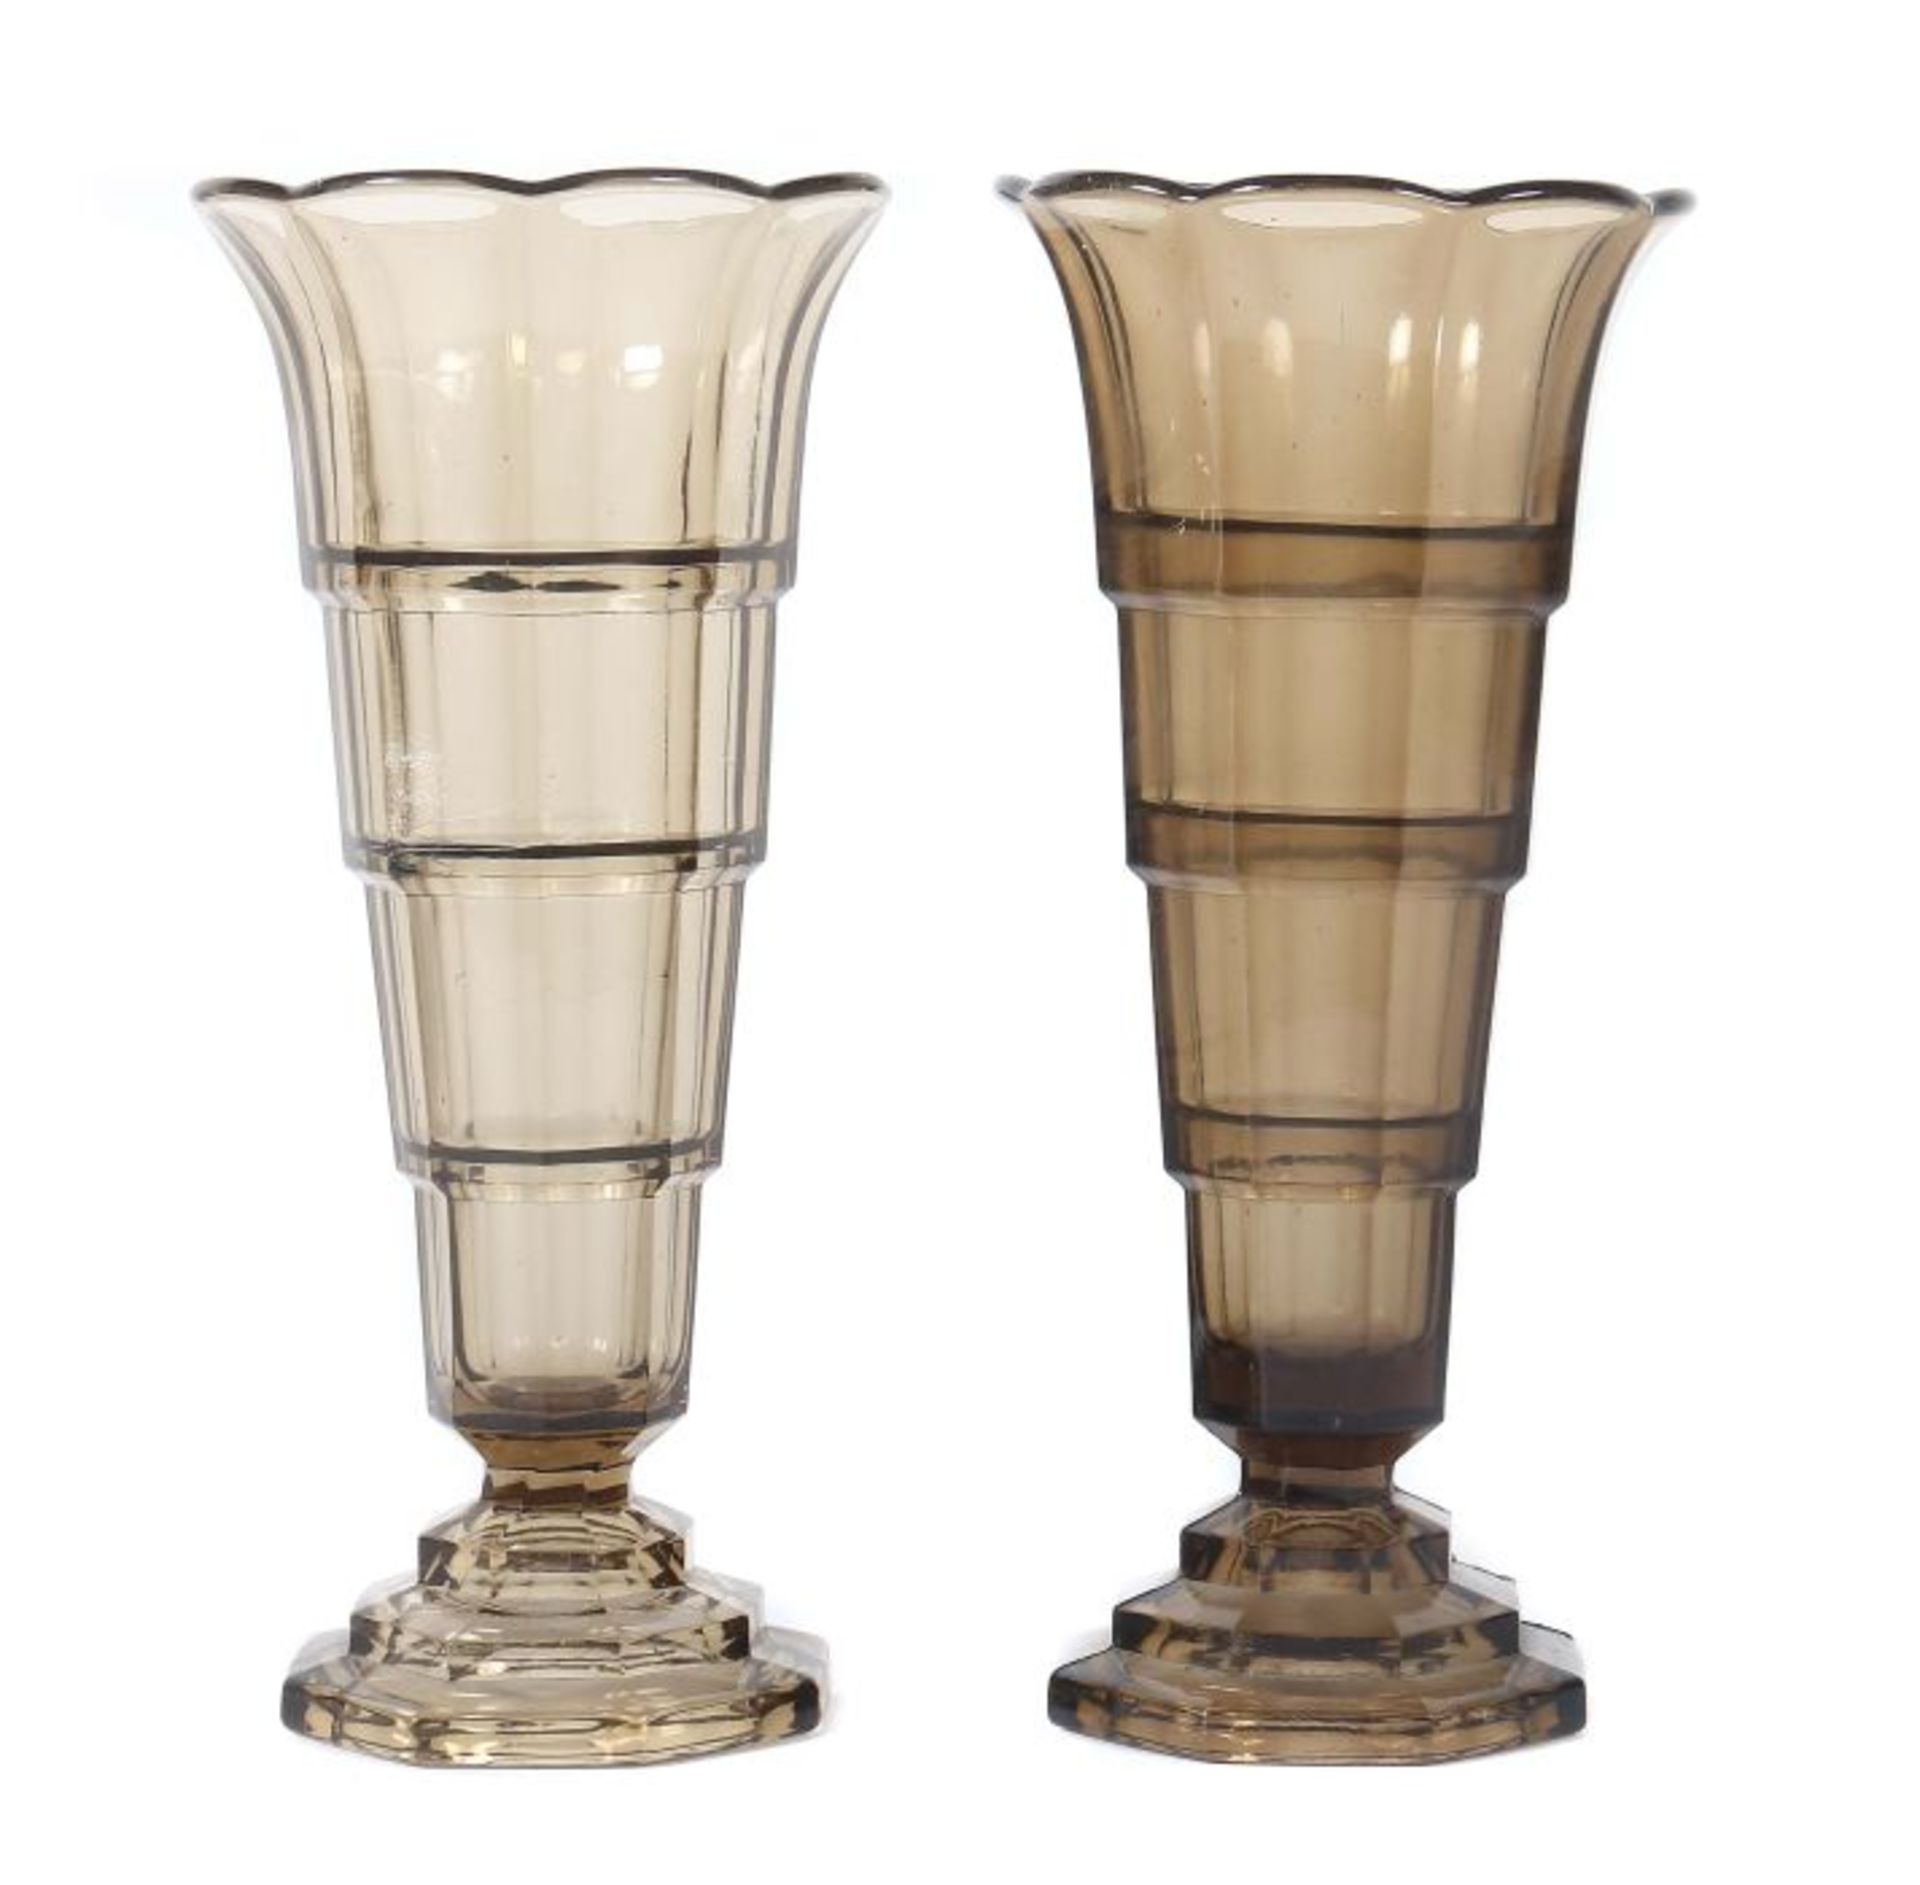 VasenpaarBelgien, 20. Jh., braunviolettes Glas, gepresst, polychonale Trichterform mit